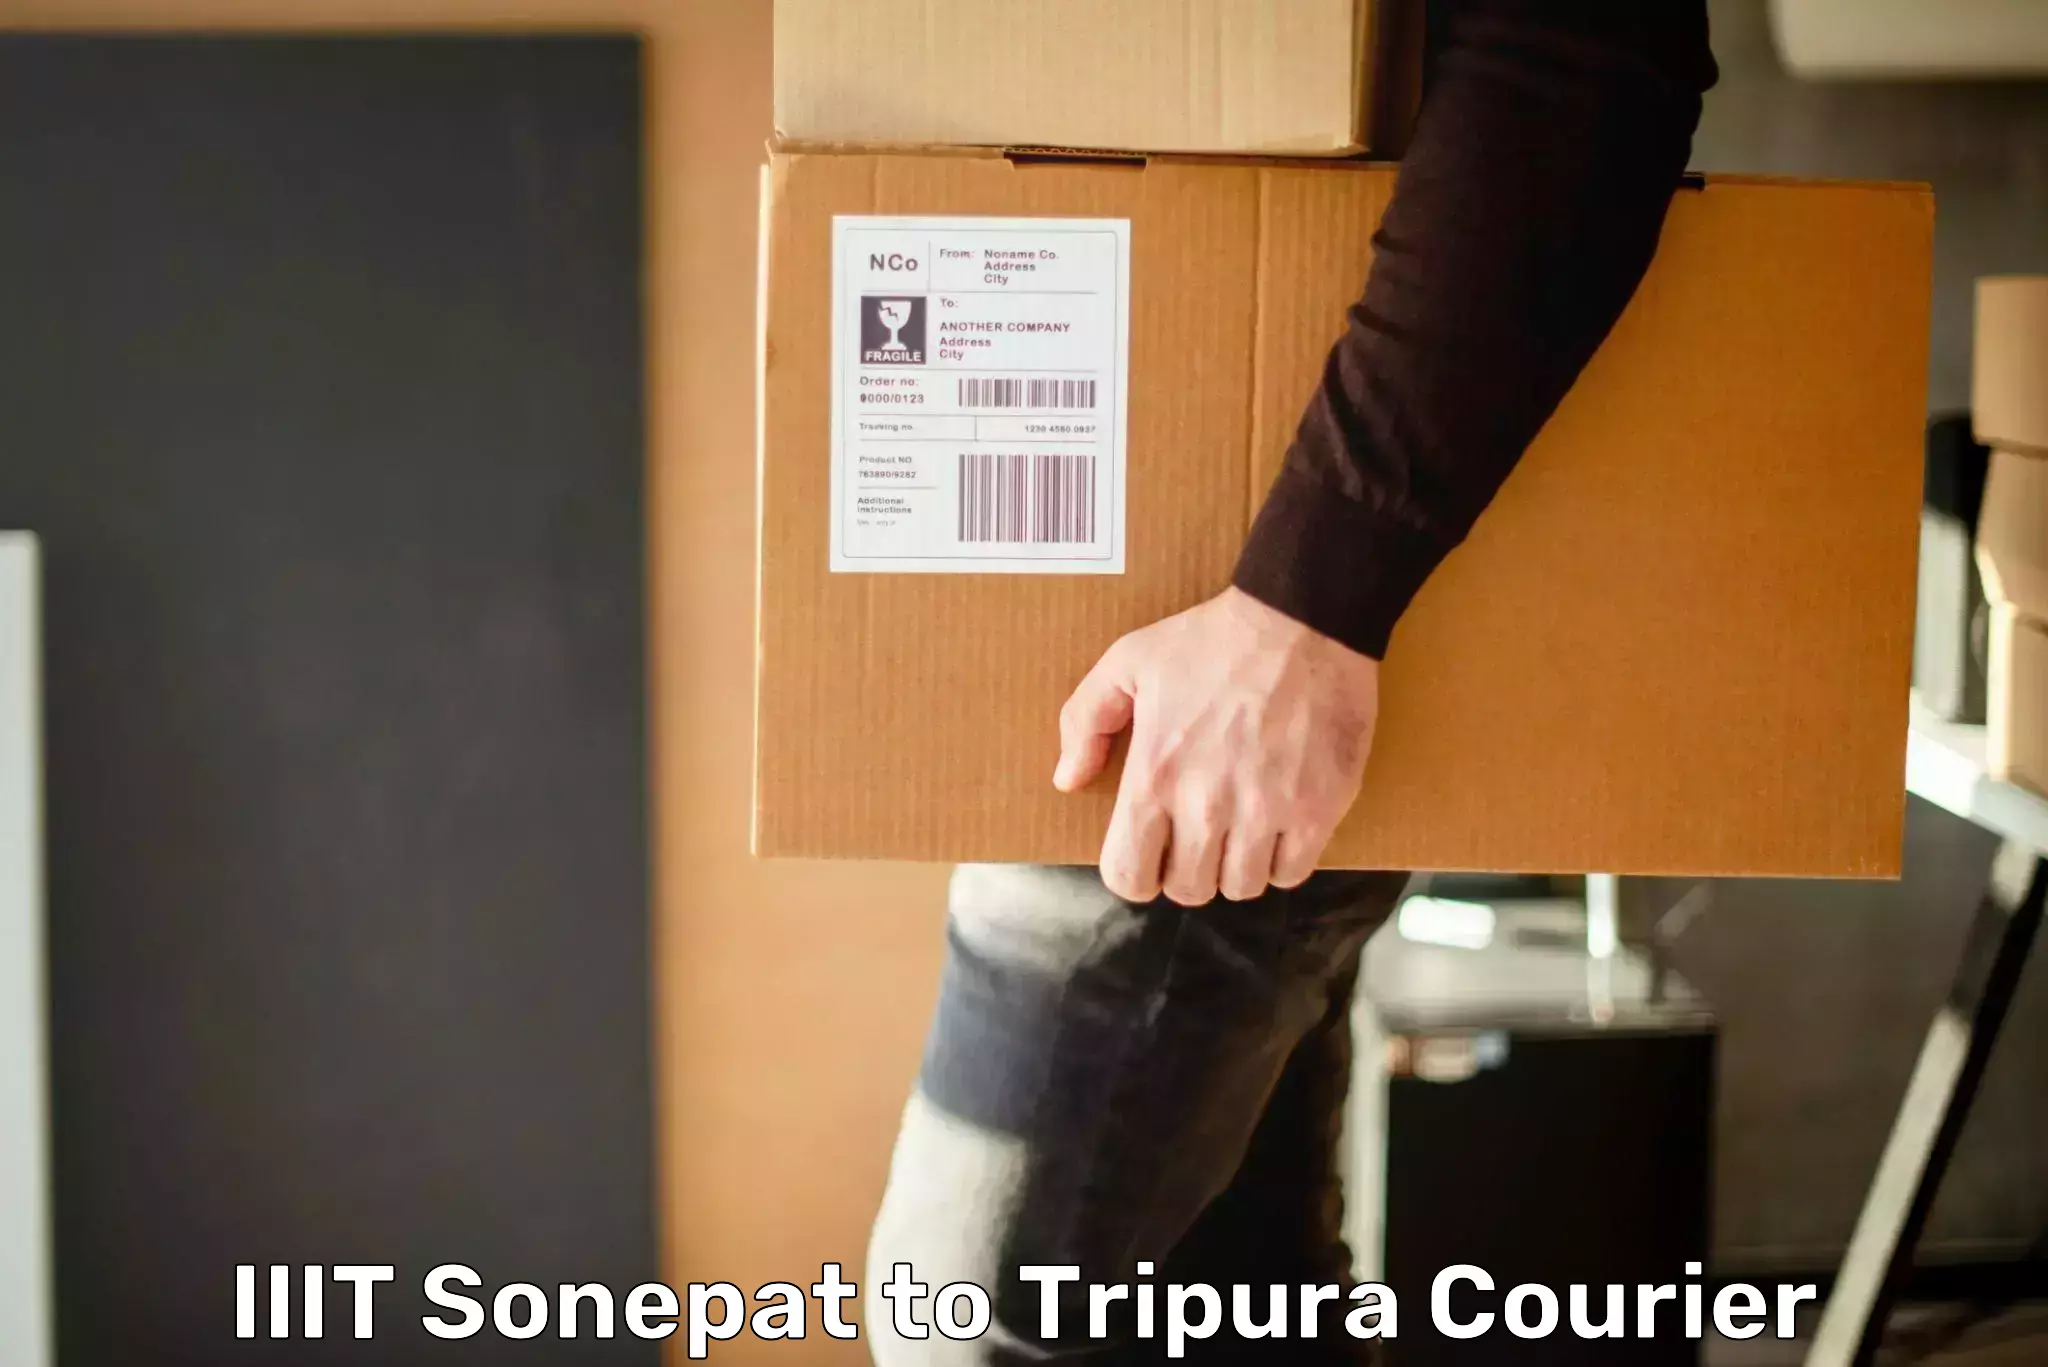 Weekend courier service IIIT Sonepat to Udaipur Tripura